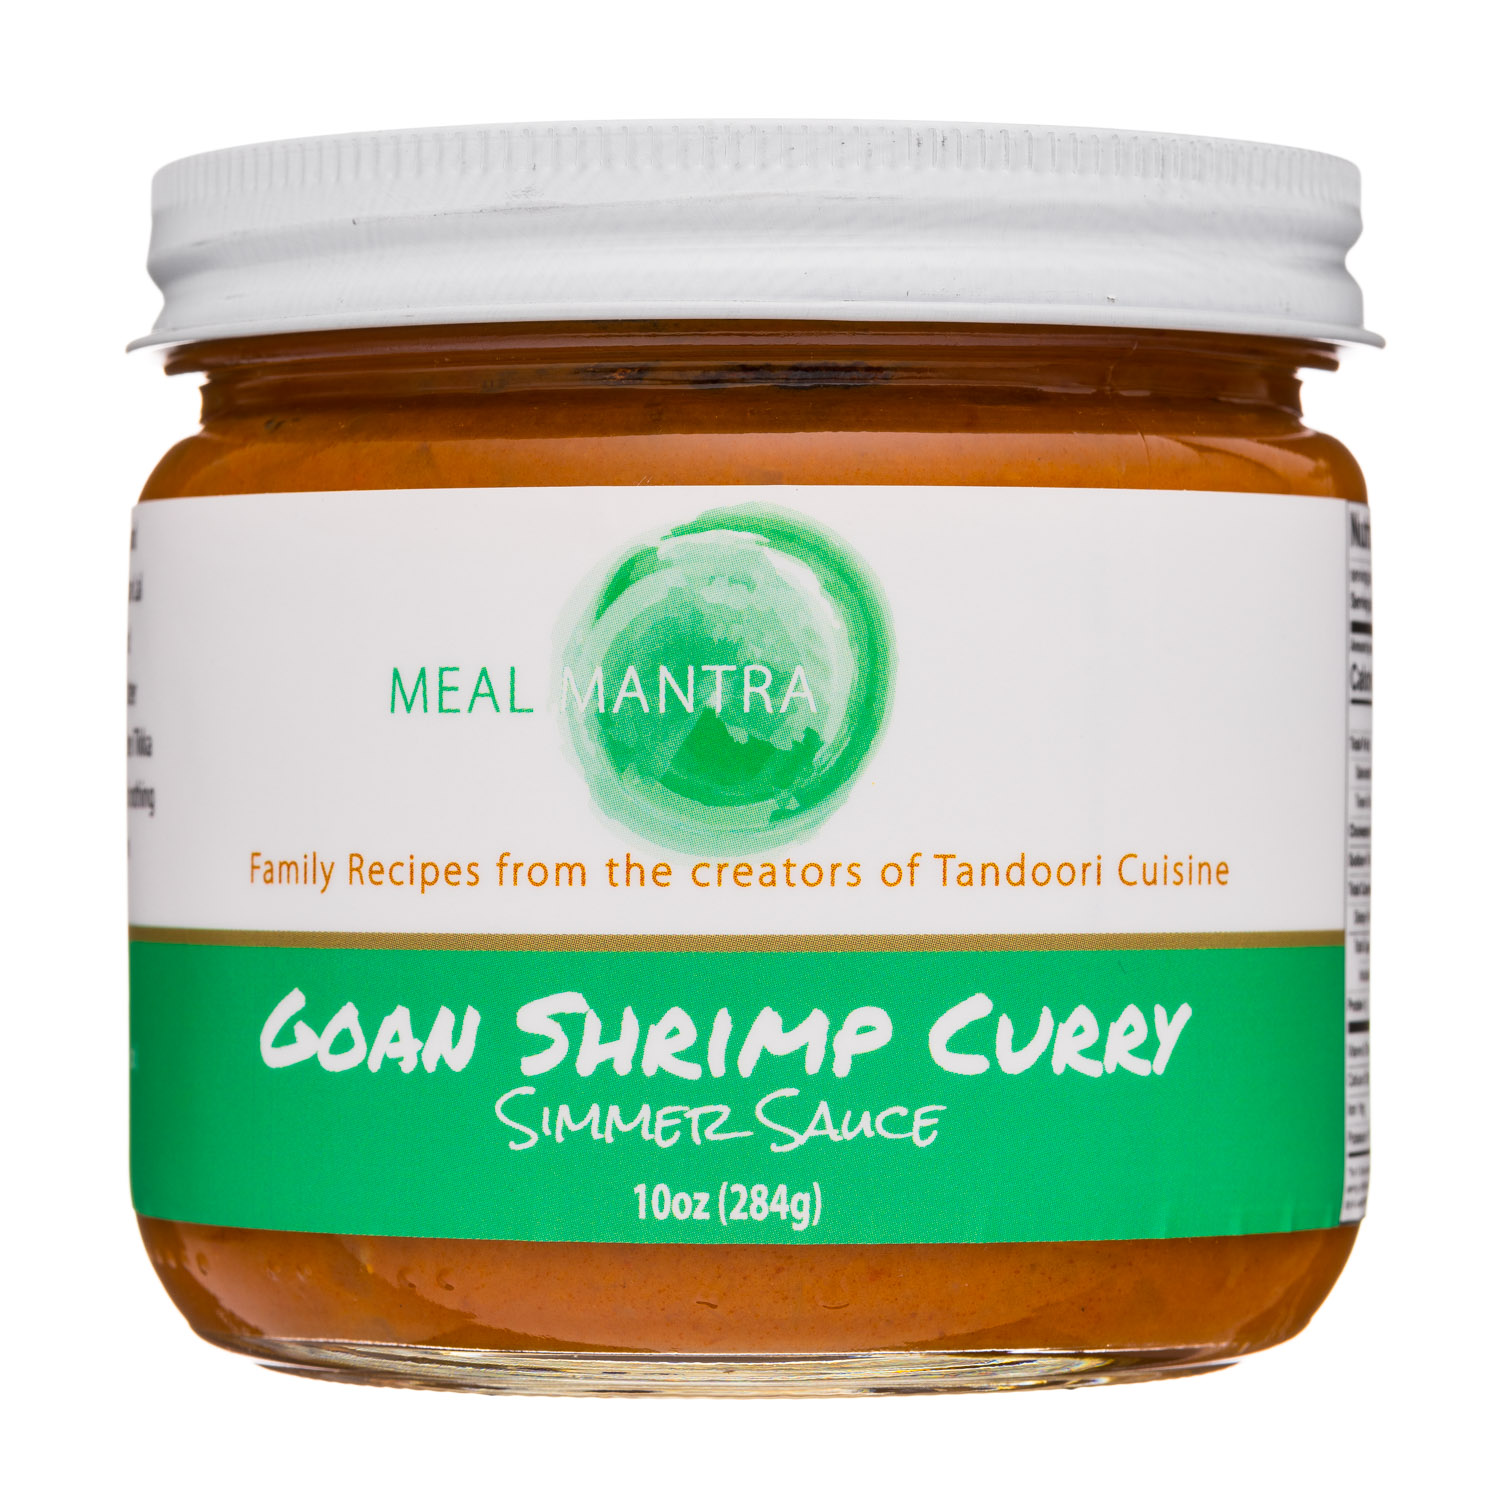 Goan Shrimp Curry Simmer Sauce